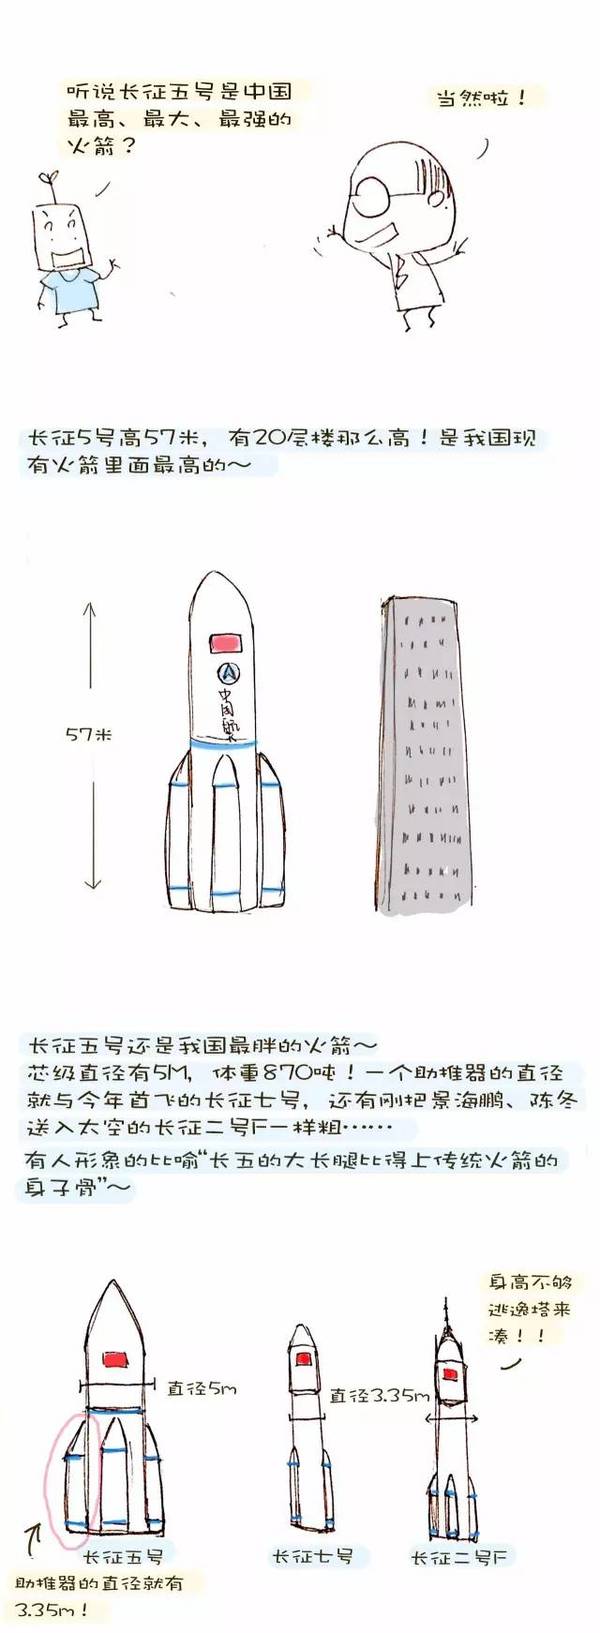 wzatv:【j2开奖】这枚火箭意义太大，必须要用漫画来秀秀